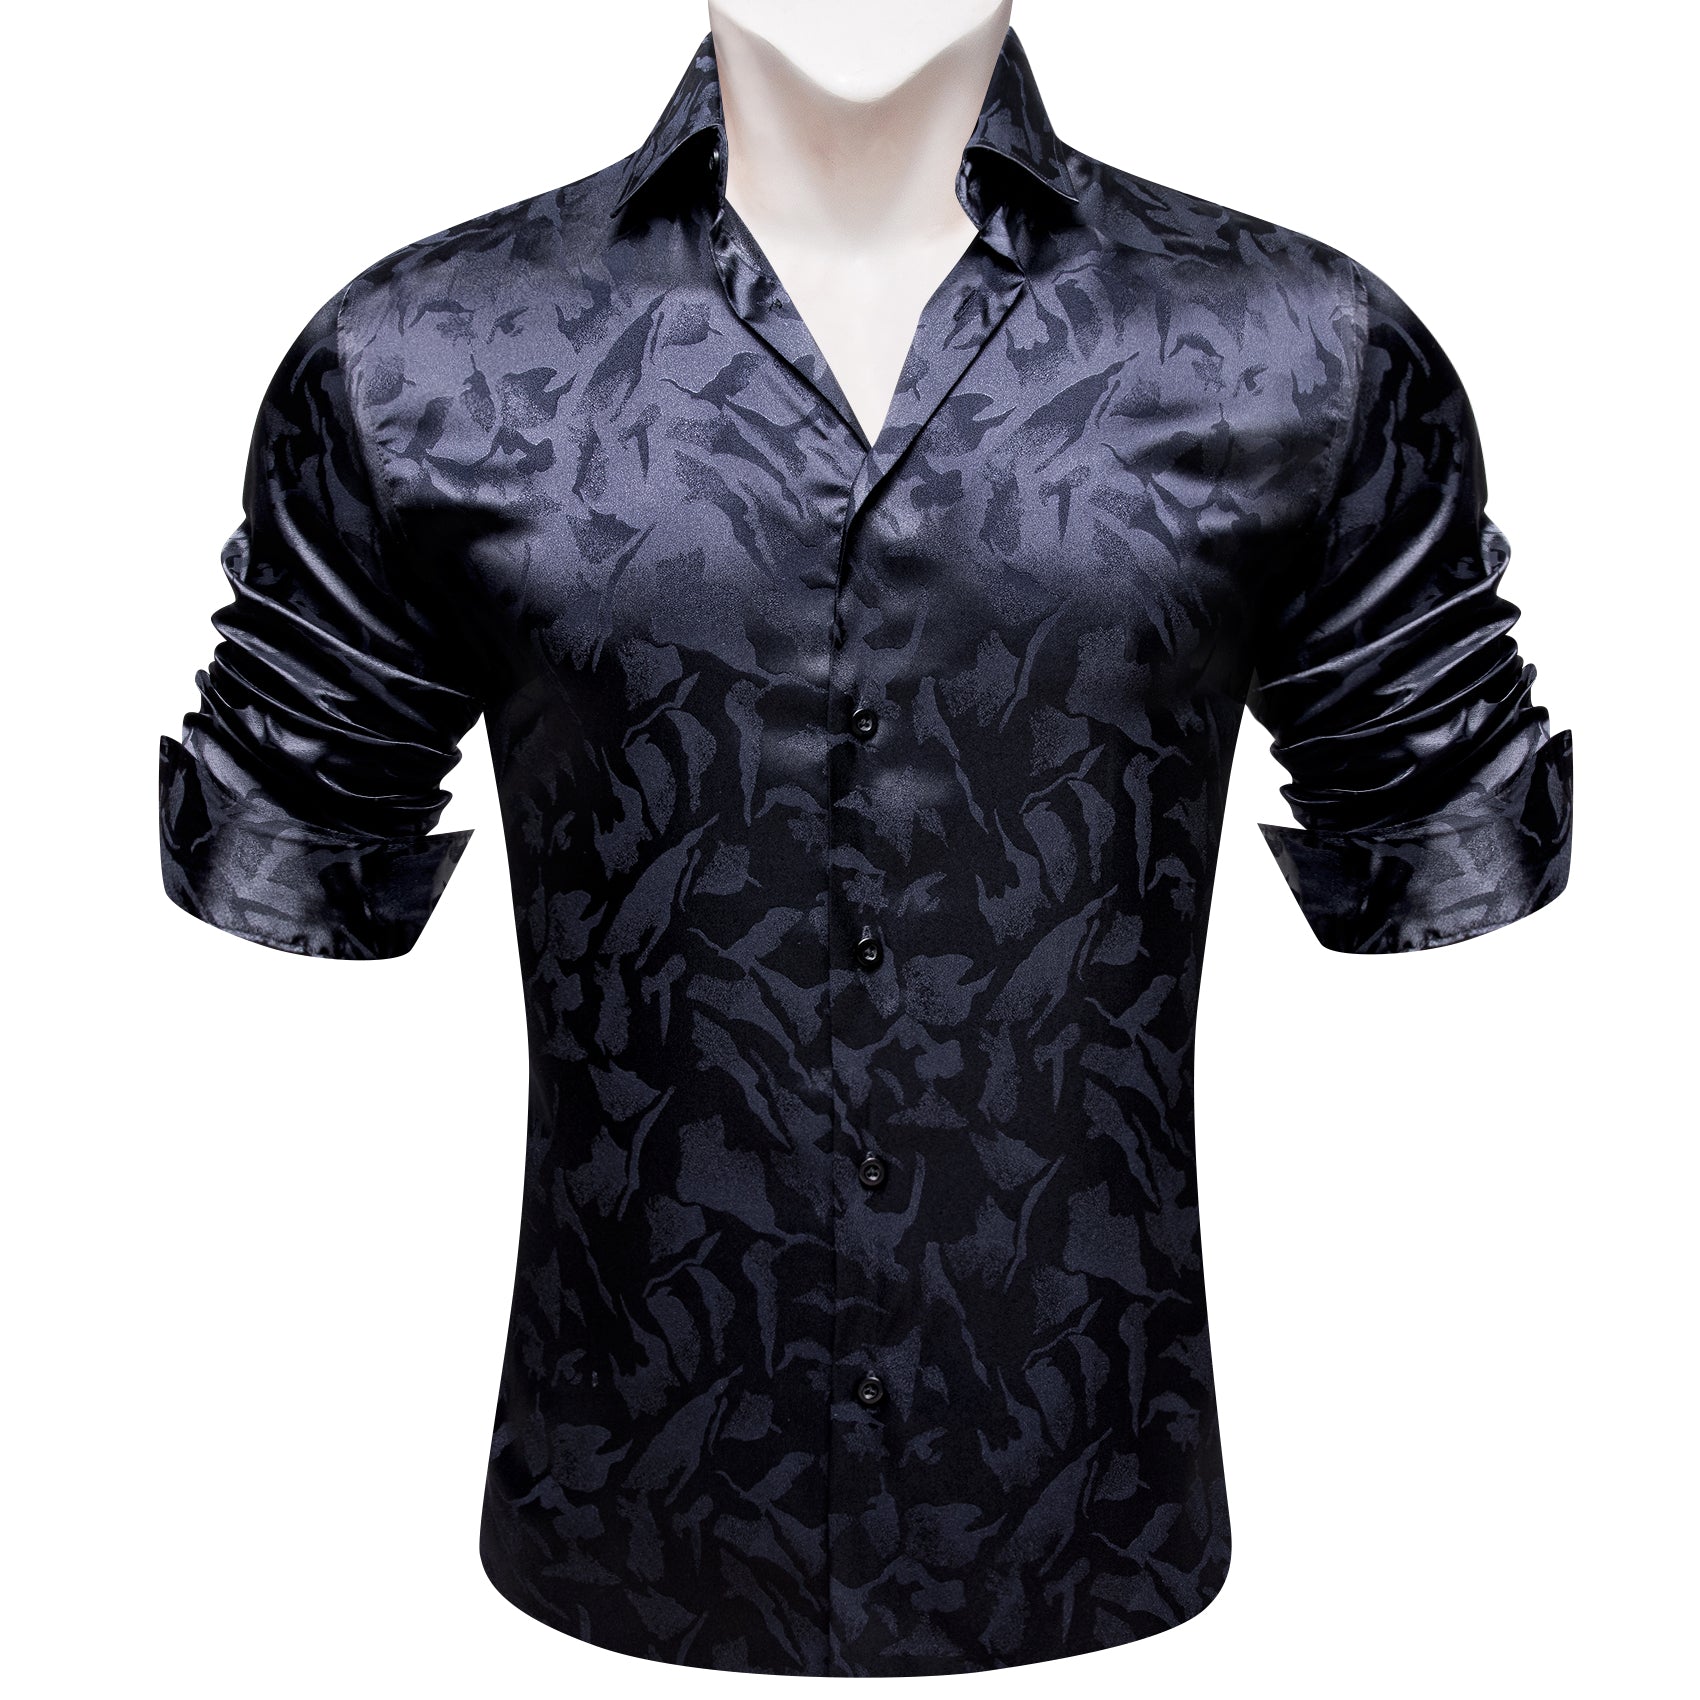 Barry.wang Black Blue Floral Silk Men's Shirt